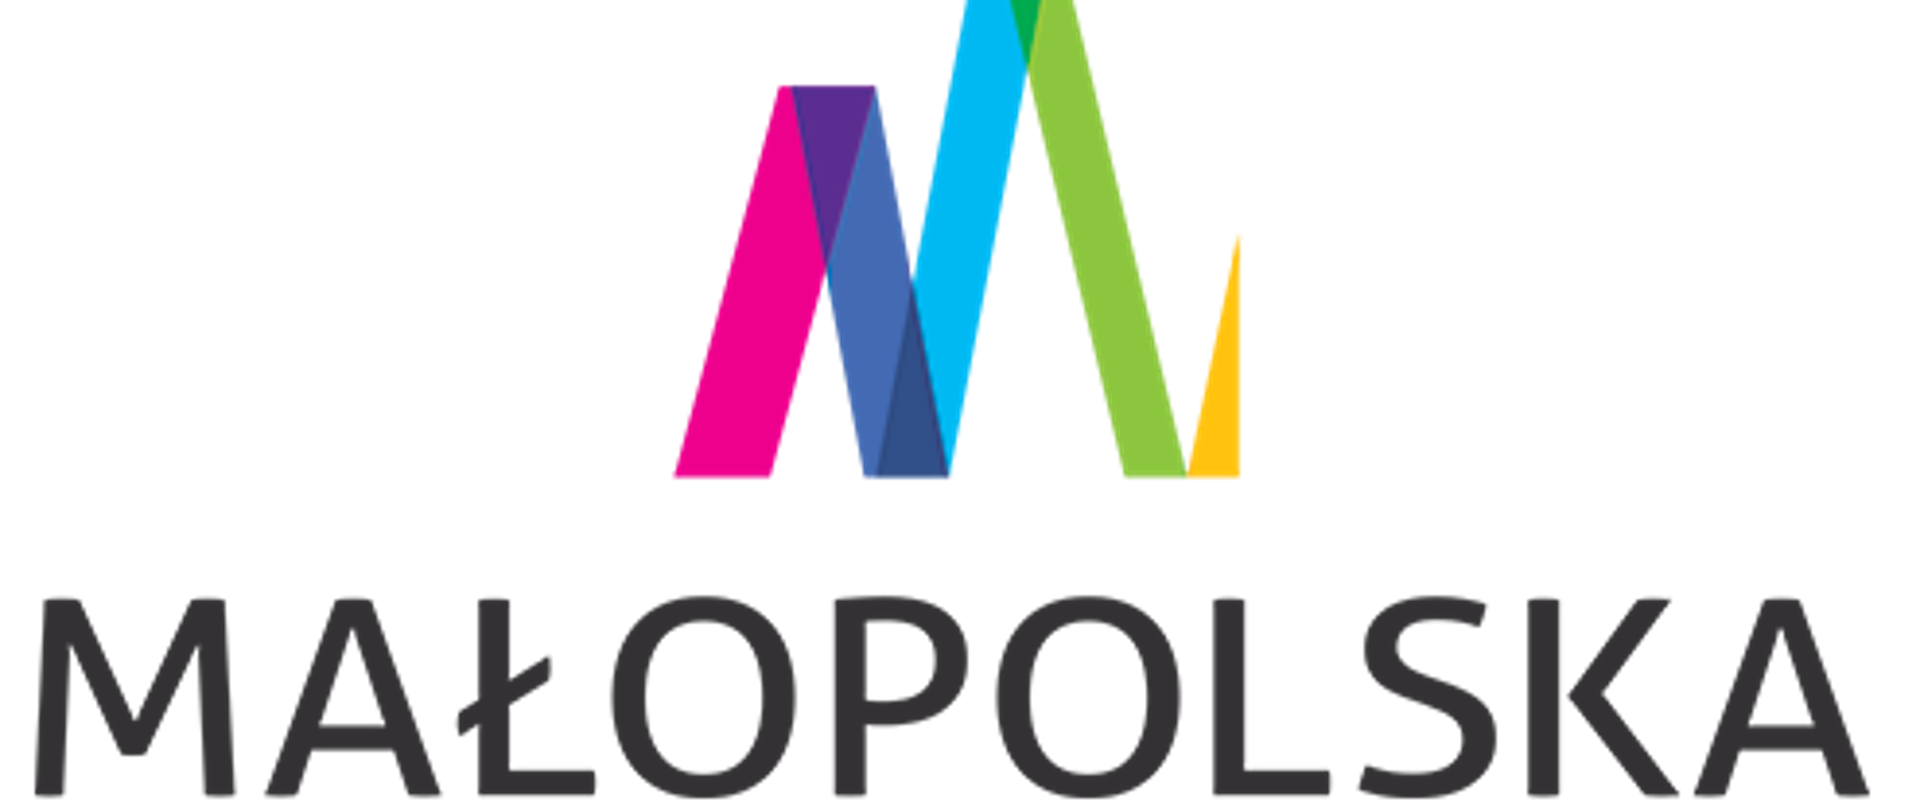 Logo Województwa Małopolskiego, nad napisem Małopolska połączone litery M i W.